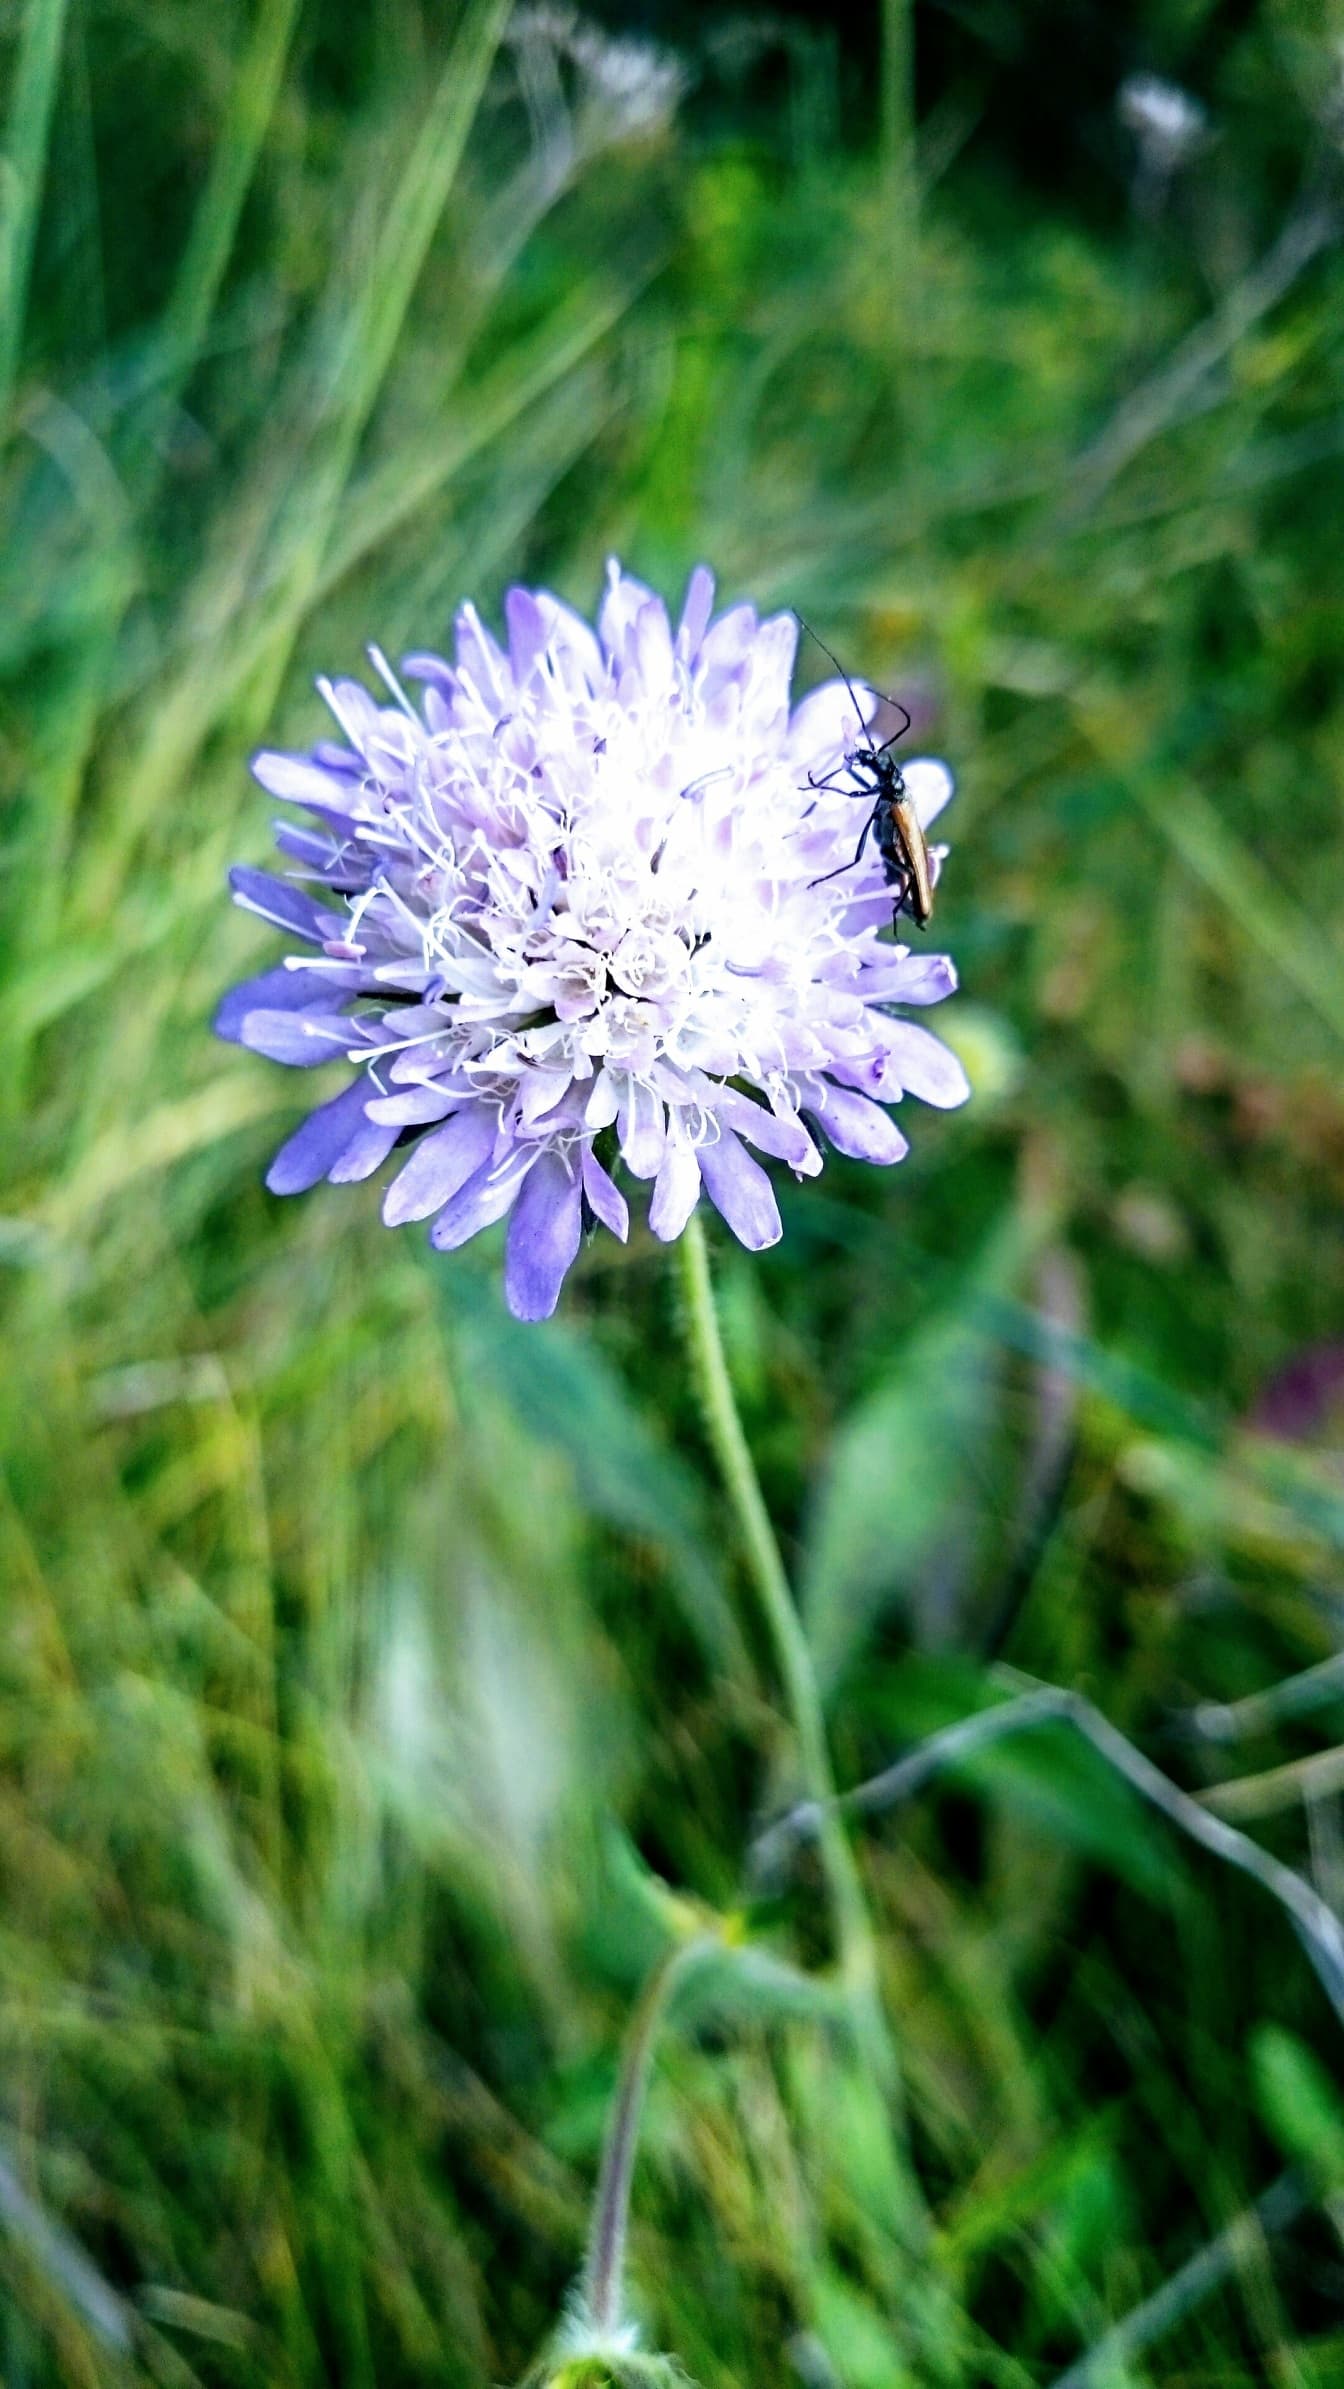 Flor silvestre arroxeada brilhante com pequeno inseto sobre ele